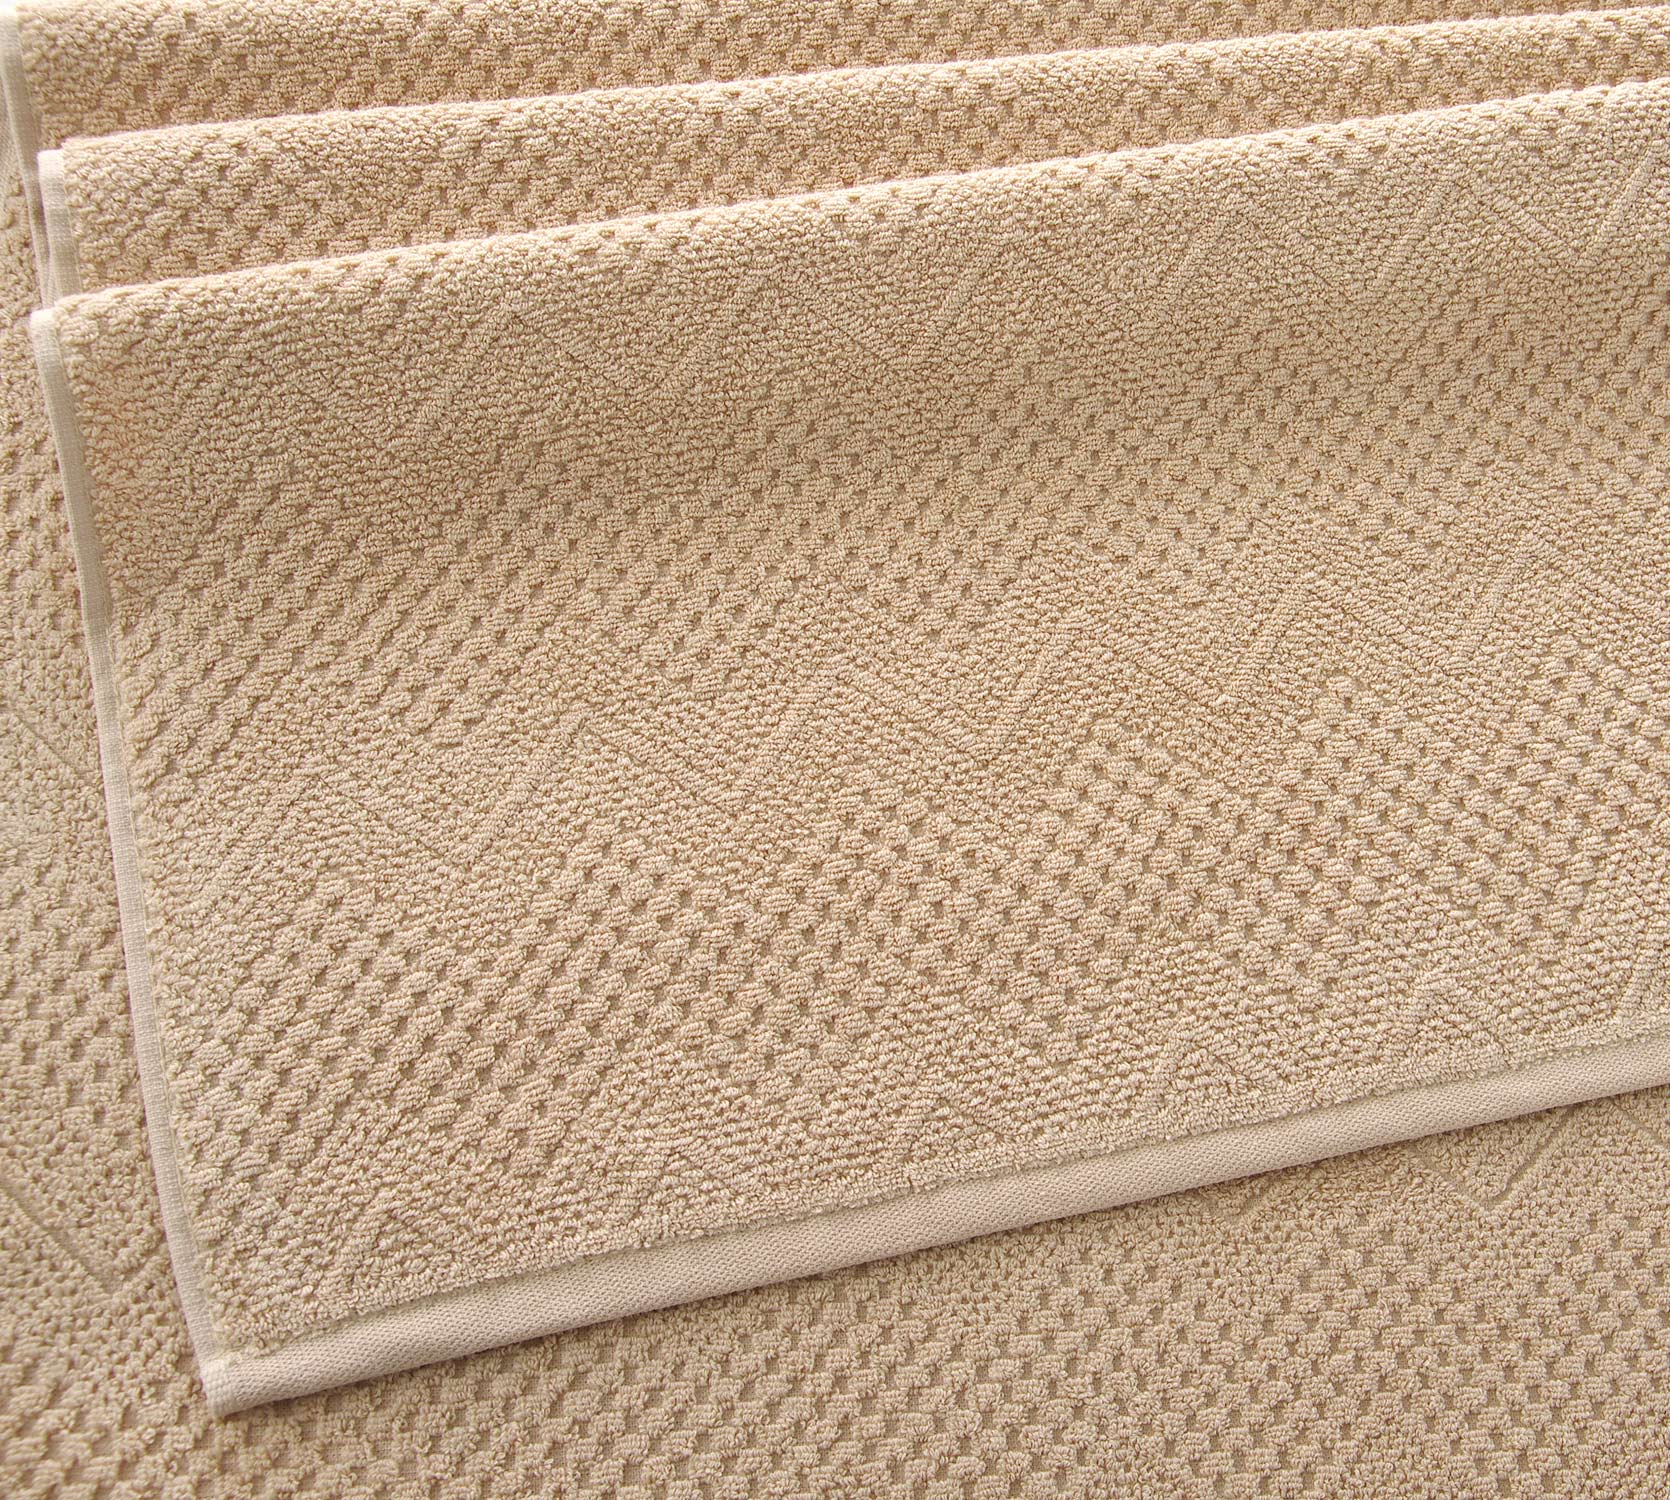 Постельное белье Полотенце махровое банное 70х140, Восторг капучино  фото